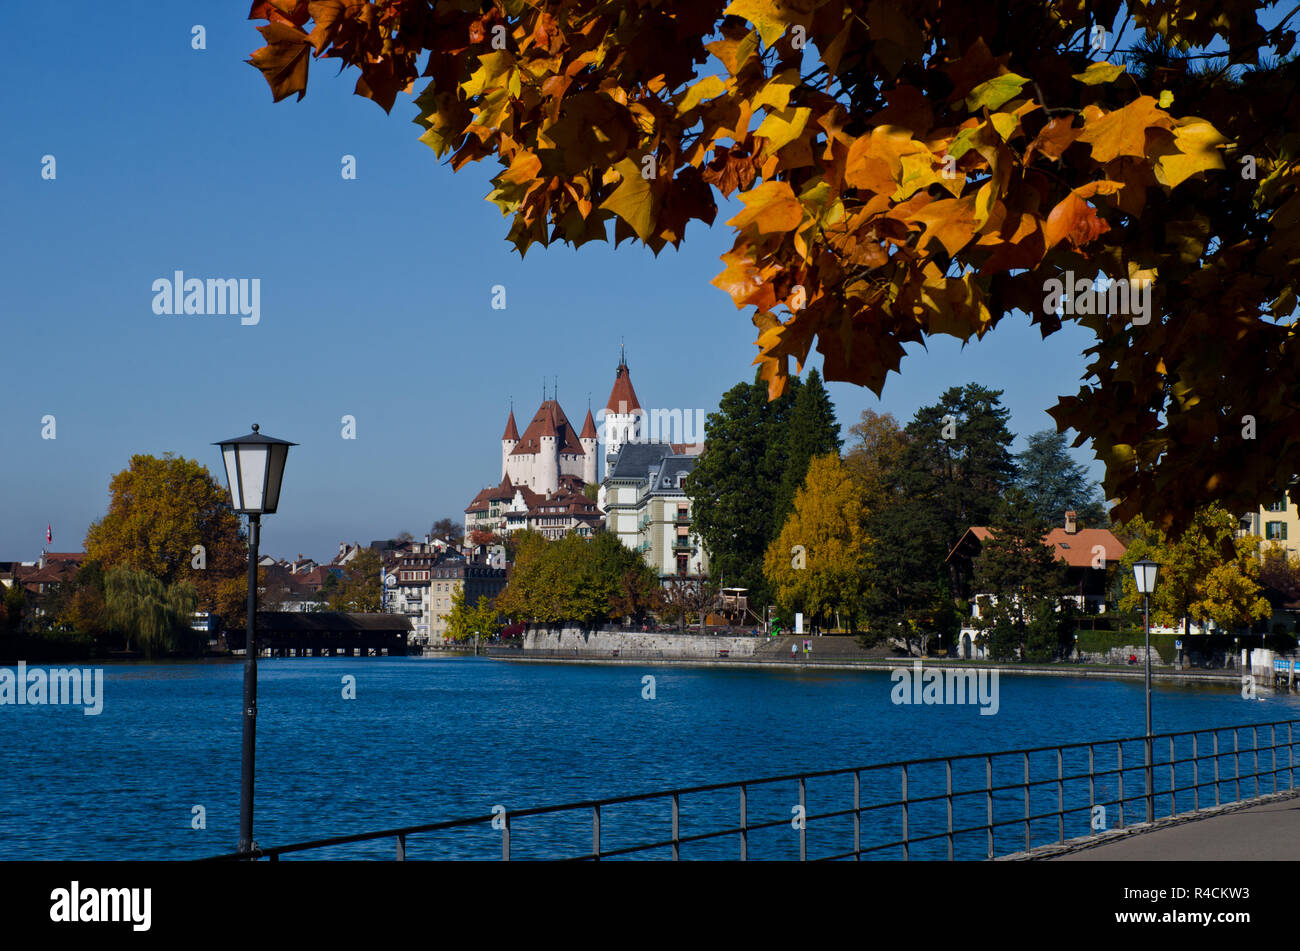 Castle and historic town Thun on Aare river, autumn, Switzerland Stock Photo